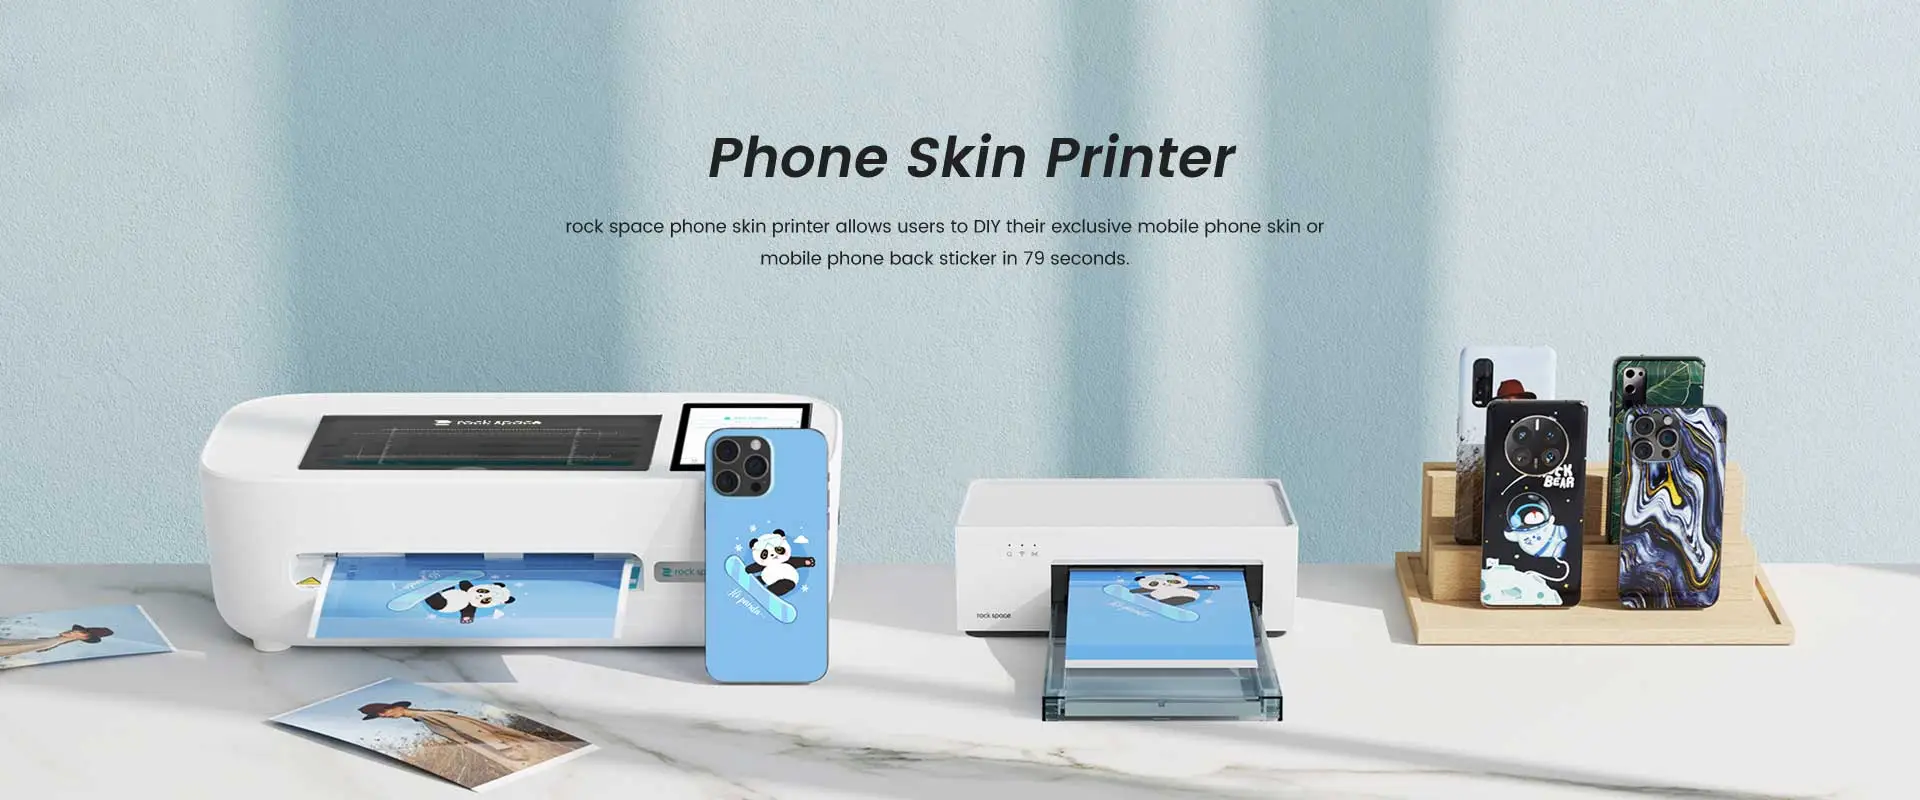 Impresora de la piel del teléfono